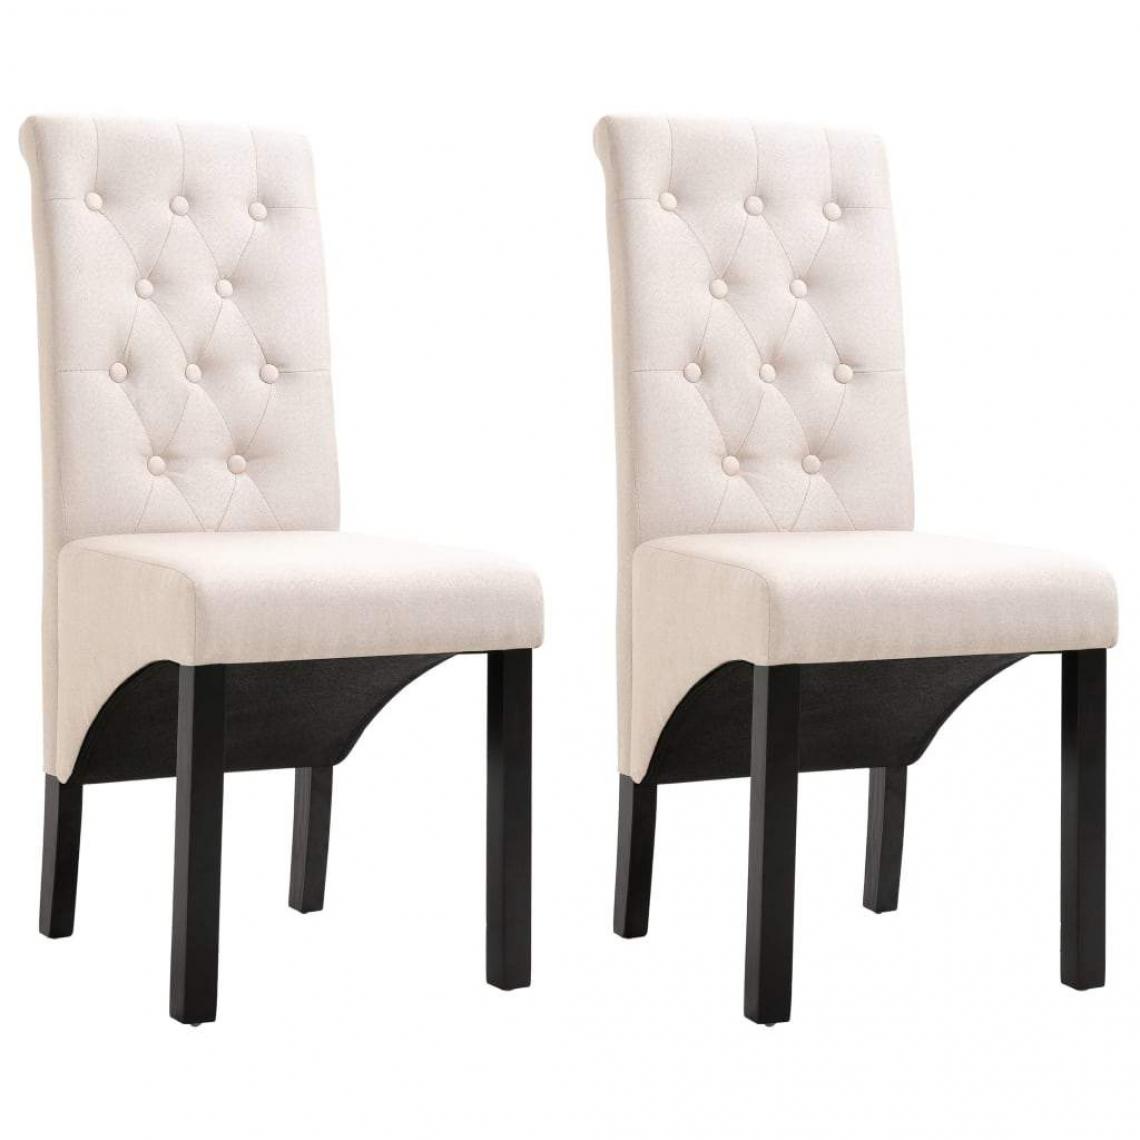 Decoshop26 - Lot de 2 chaises de salle à manger design classique cuisine tissu crème CDS020437 - Chaises